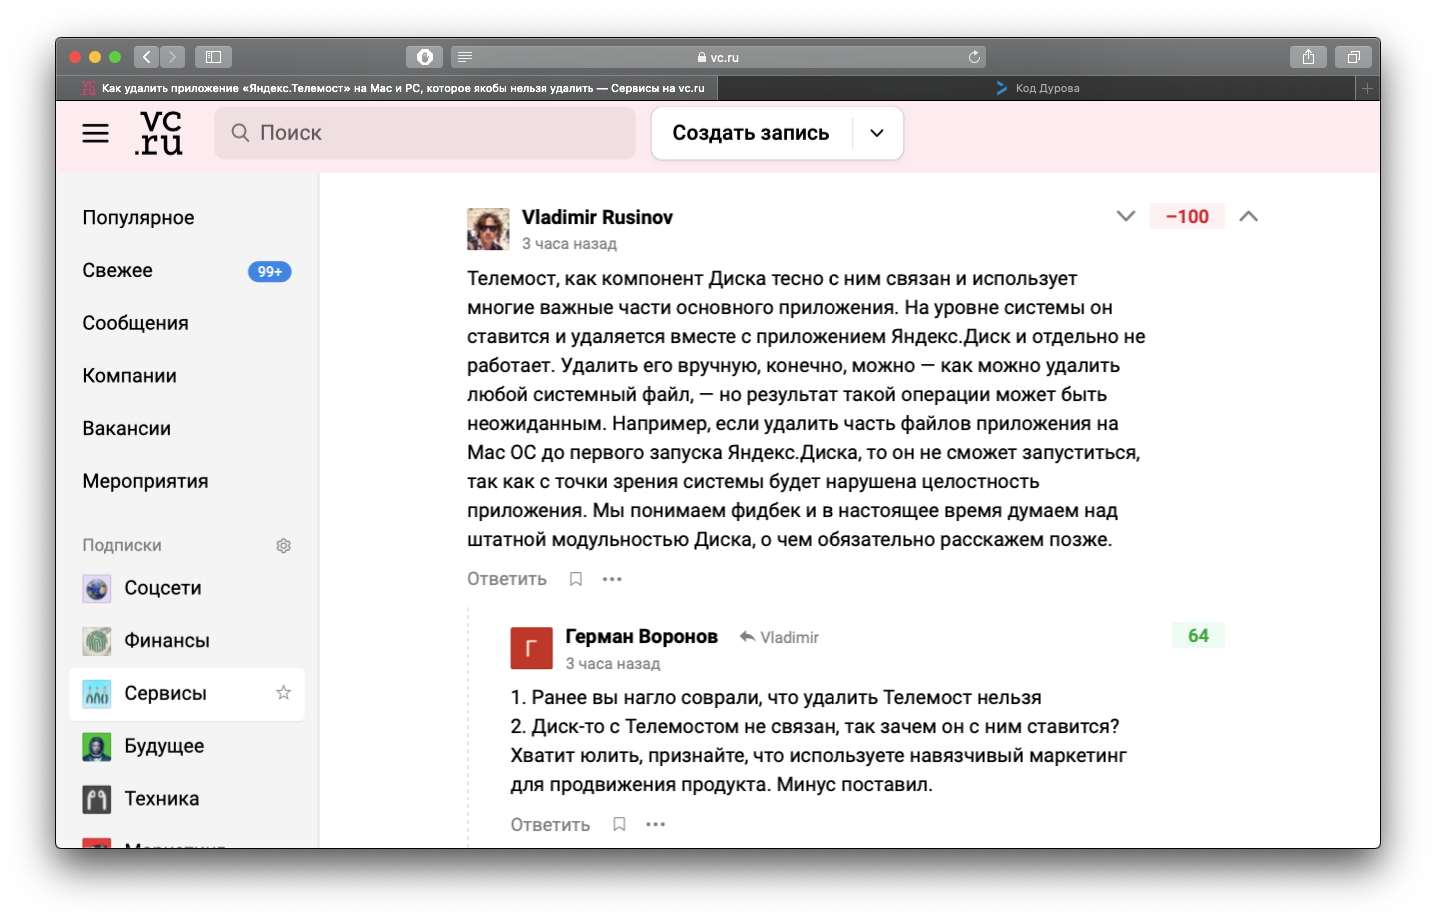 Удаление Фото Яндекс